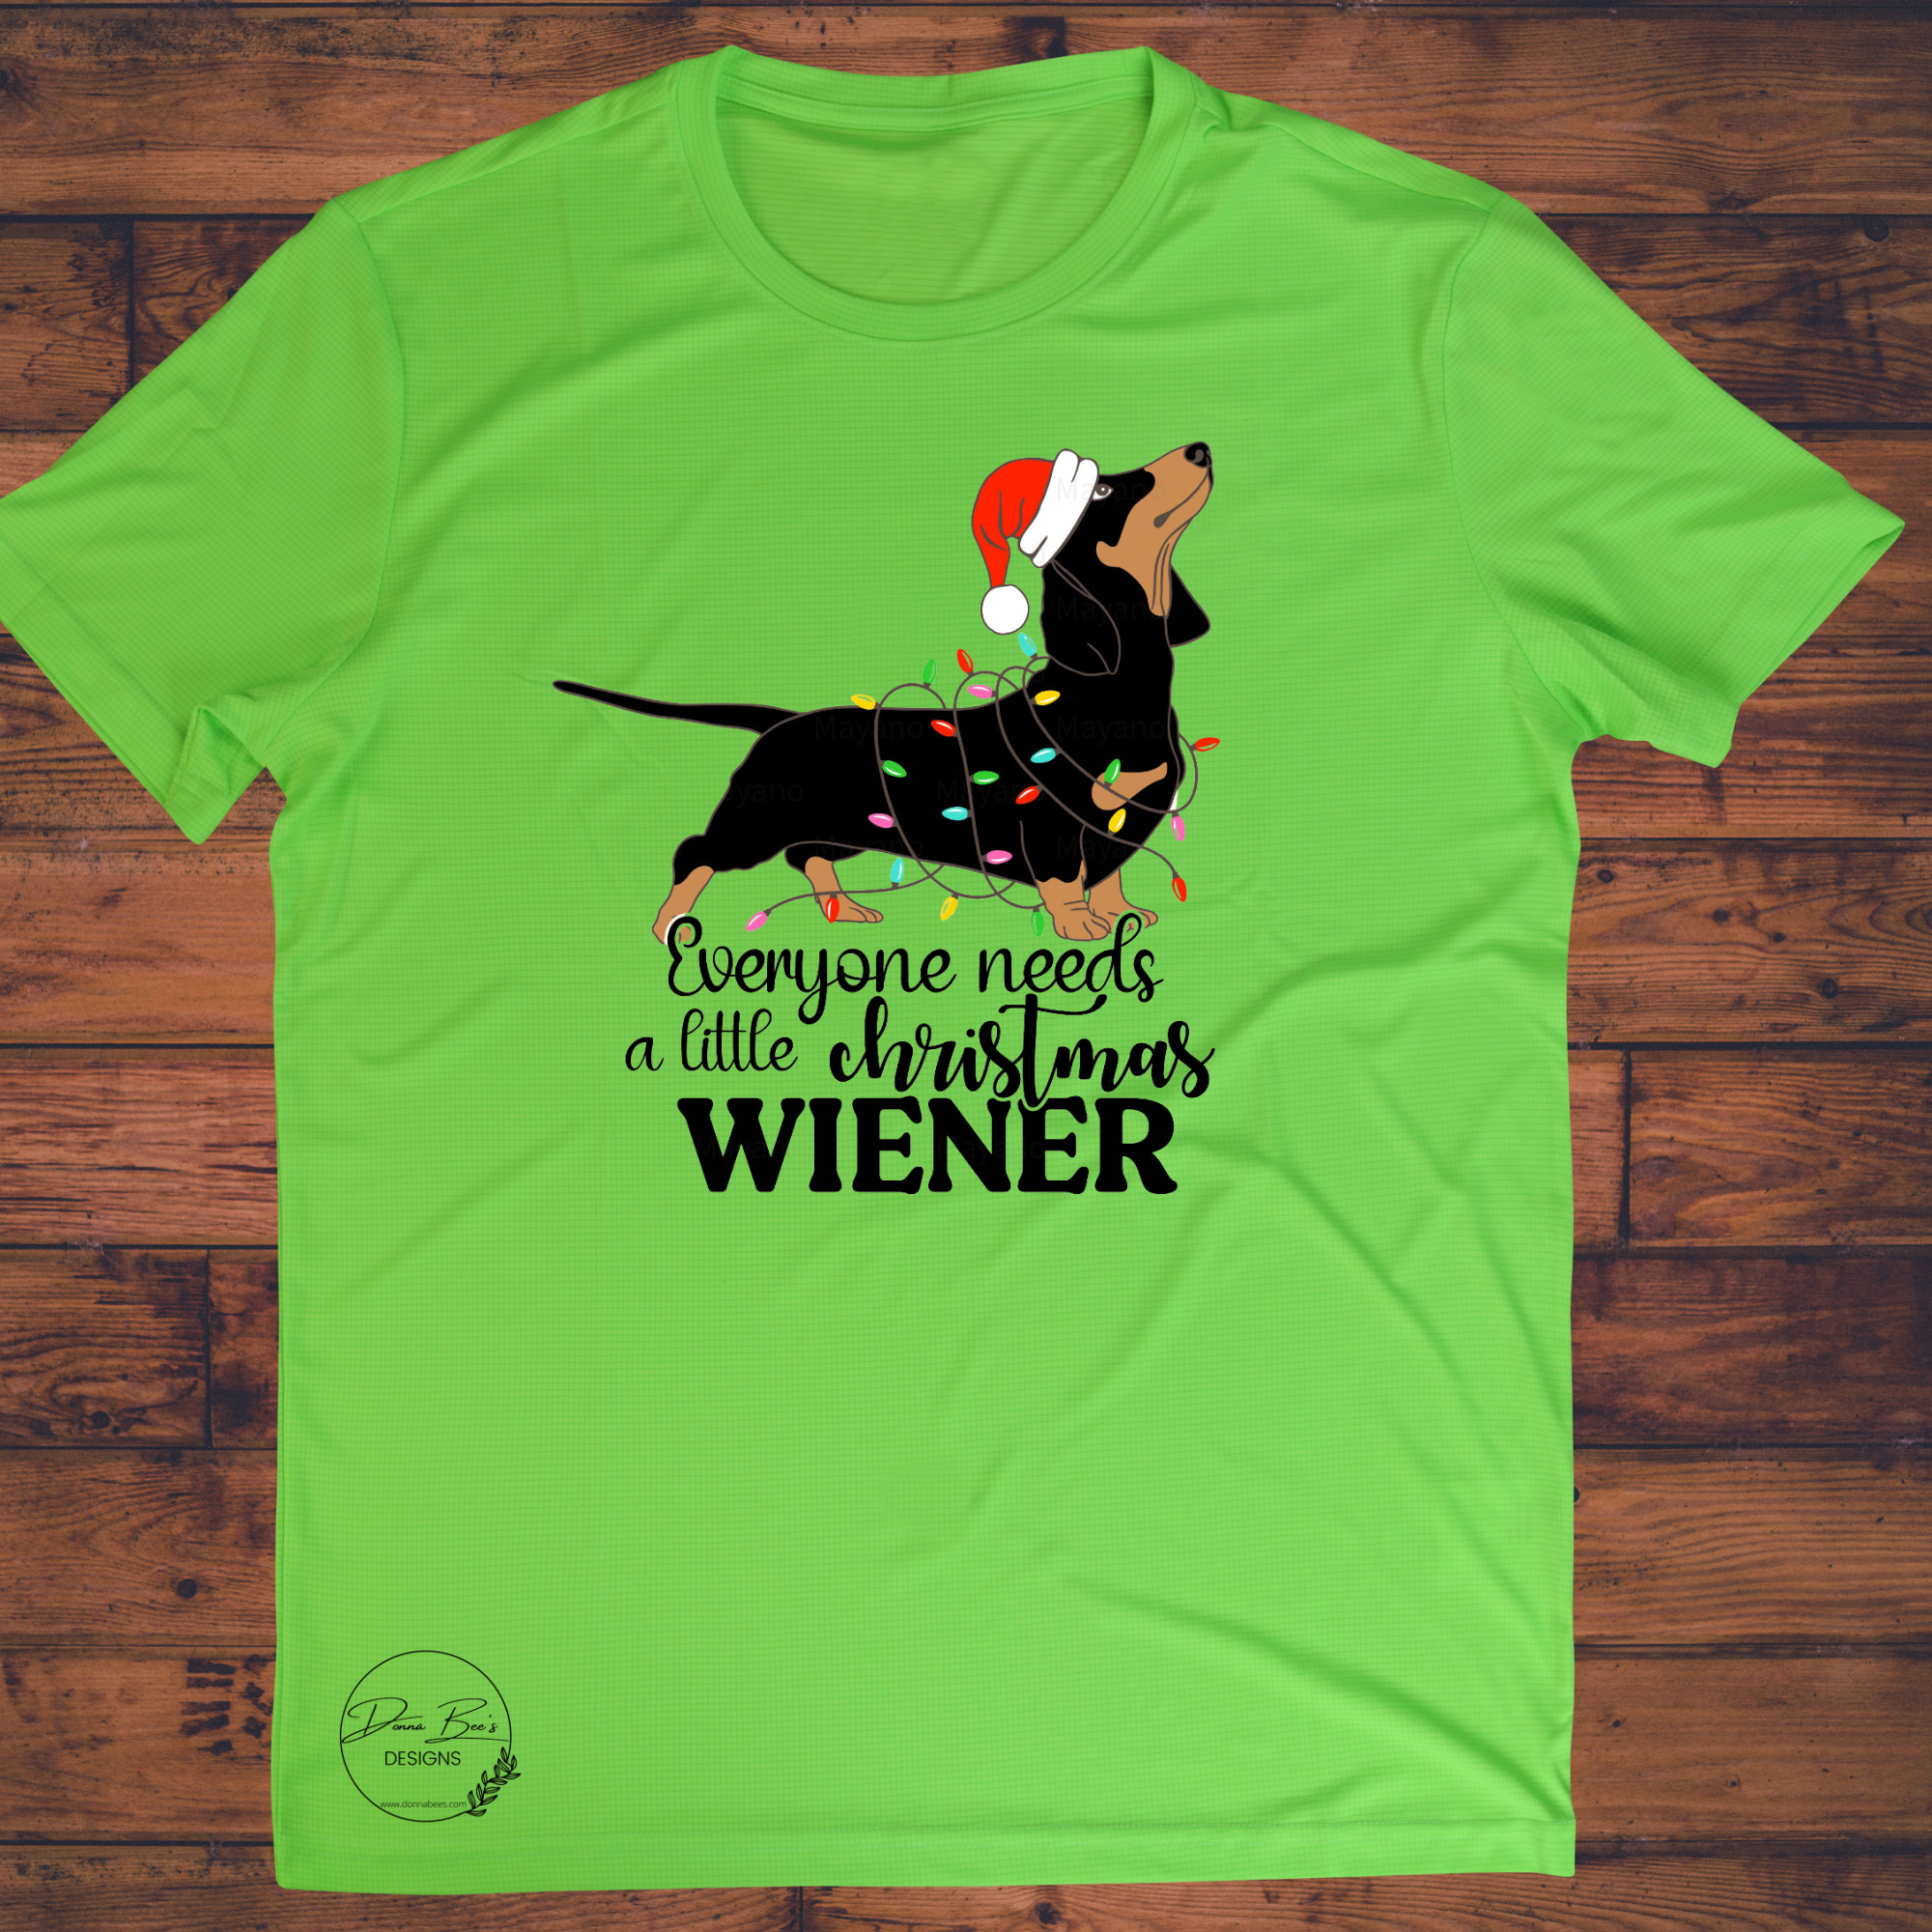 Everyone needs a little Christmas Weiner tee